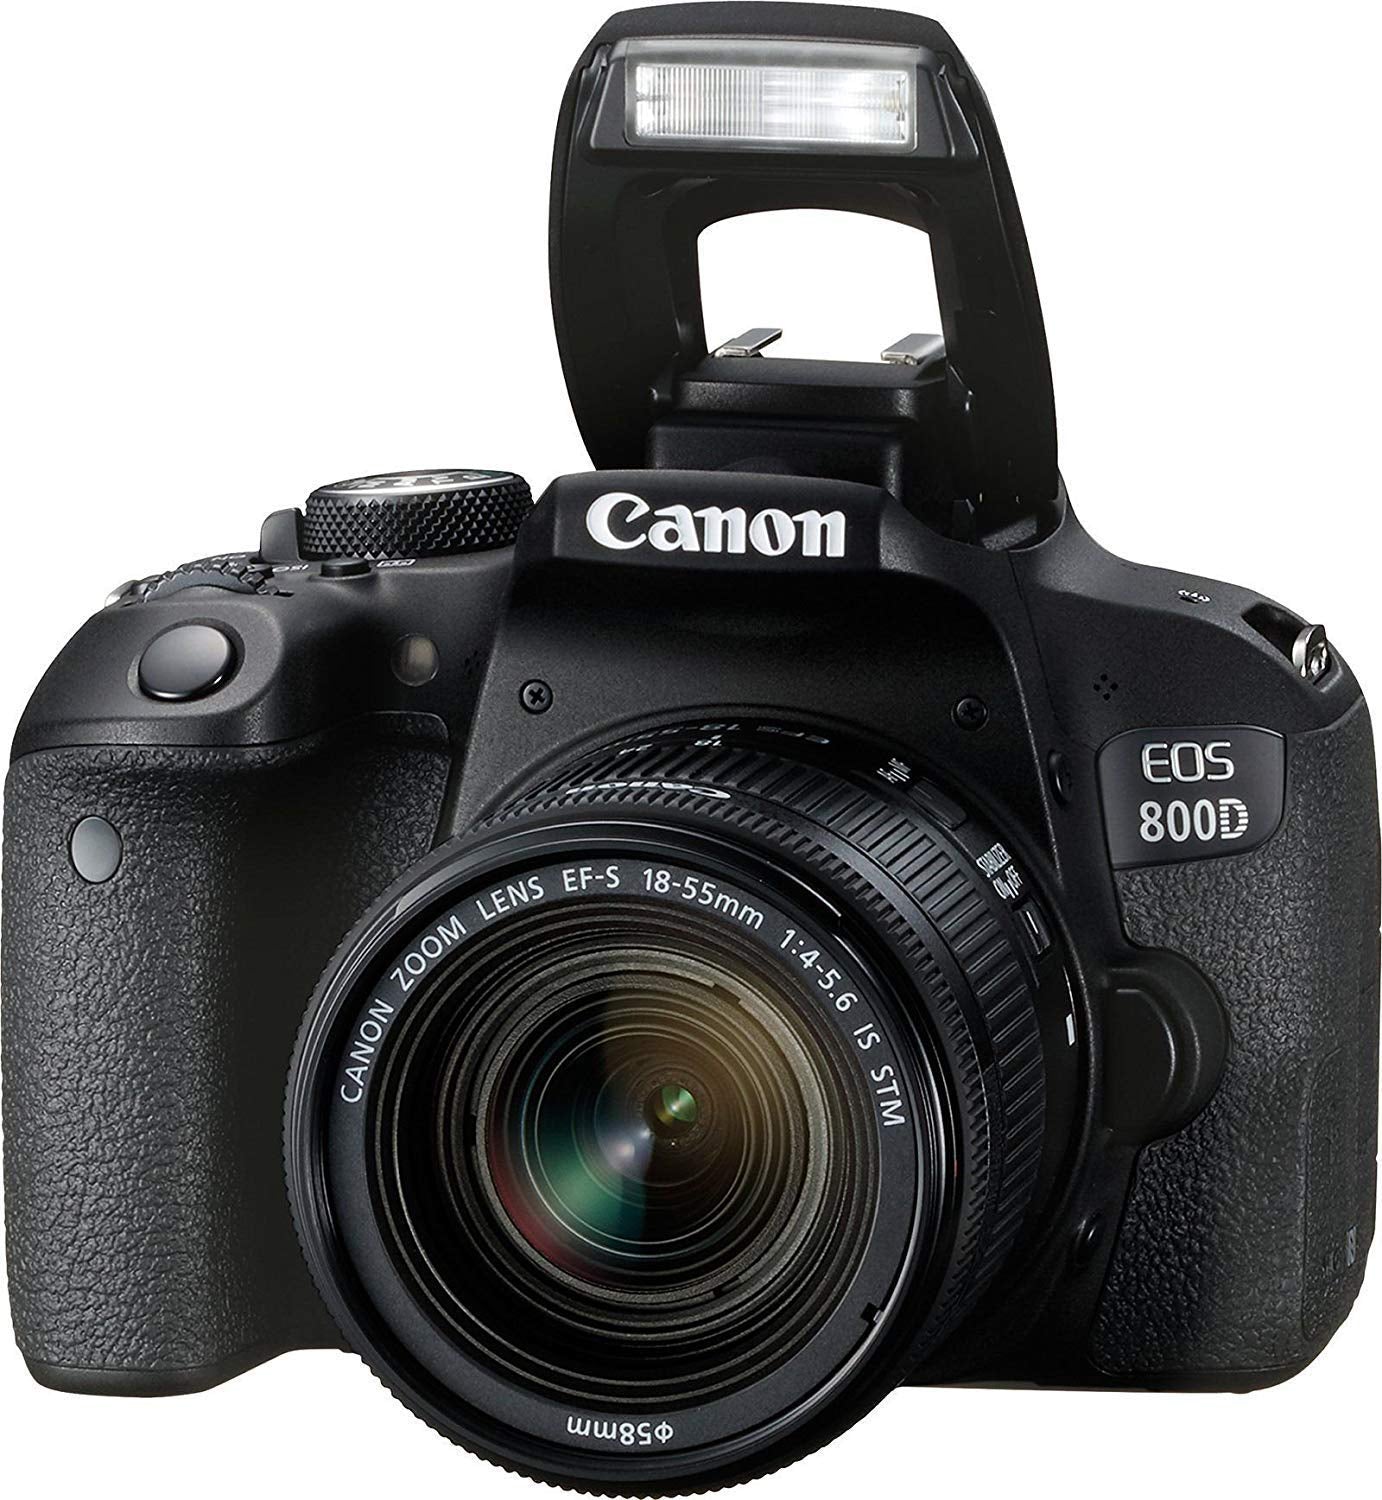 Canon EOS 800D (Rebel T7i) 18-55mm IS STM Lens  Bundle �SanDisk 32gb SD Card + 3PC Filter Kit + MORE - International